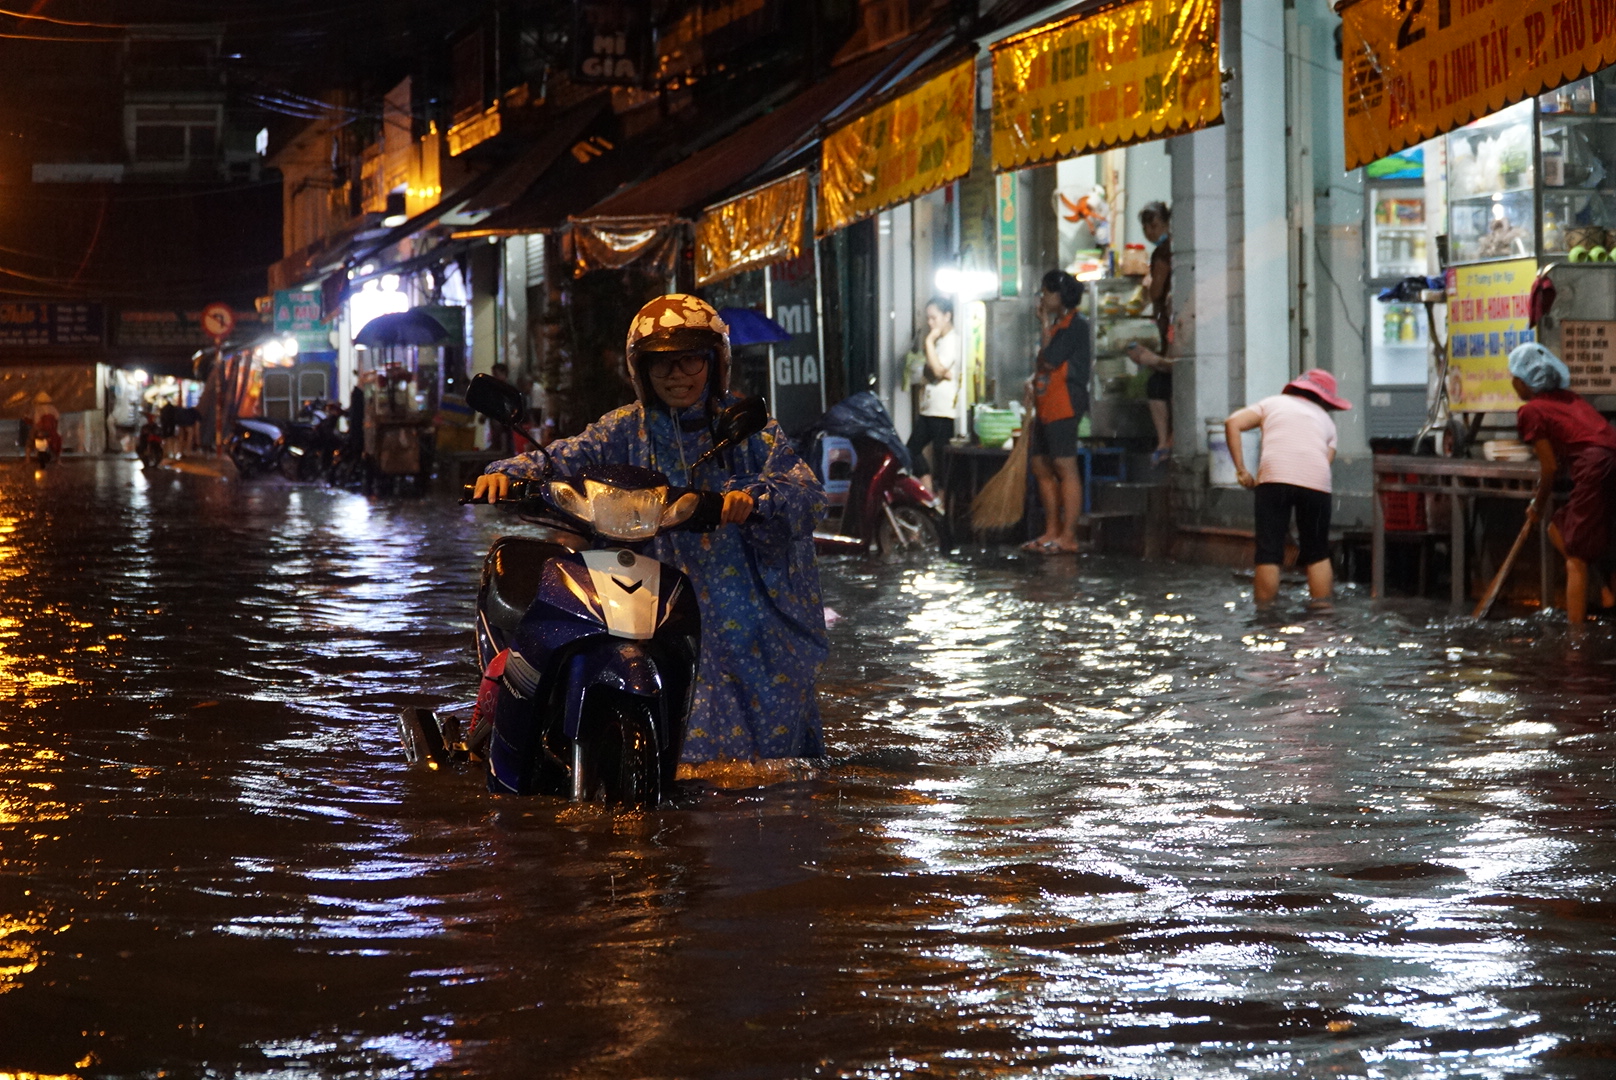 Đến 18 giờ 30 các con đường nhánh ở chợ Thủ Đức như: Đặng Thị Rành, Dương Văn Cam, Trương Văn Ngư vẫn trong tình trạng ngập sâu